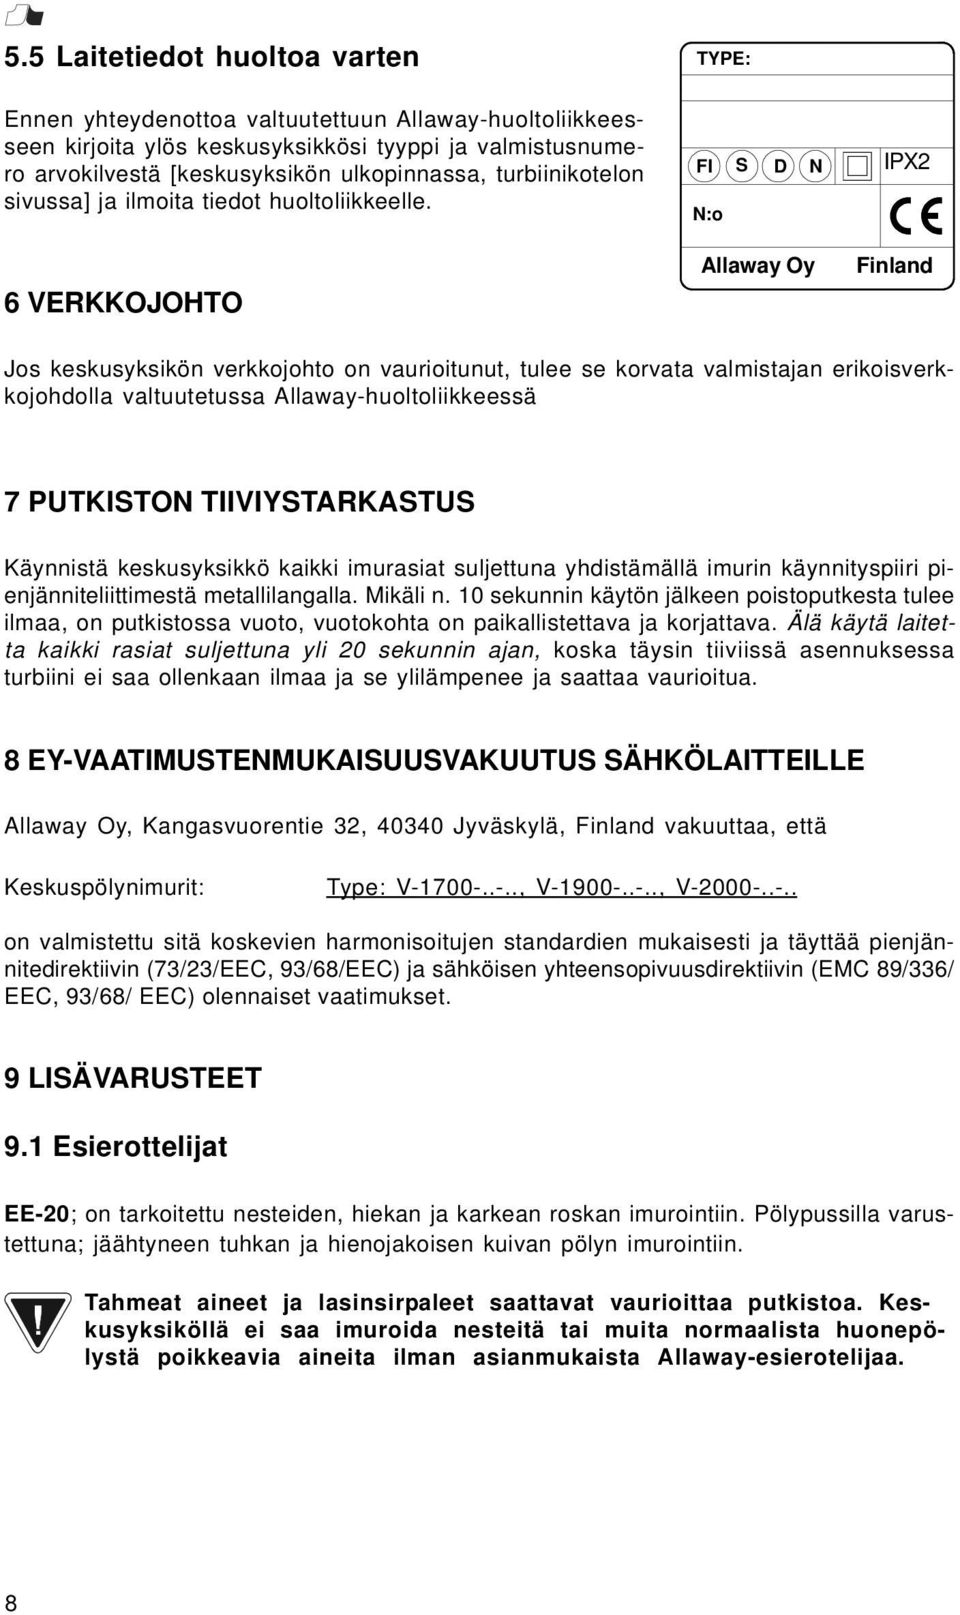 6 VERKKOJOHTO FI S D N N:o Allaway Oy IPX2 IPX4 Finland Jos keskusyksikön verkkojohto on vaurioitunut, tulee se korvata valmistajan erikoisverkkojohdolla valtuutetussa Allaway-huoltoliikkeessä 7